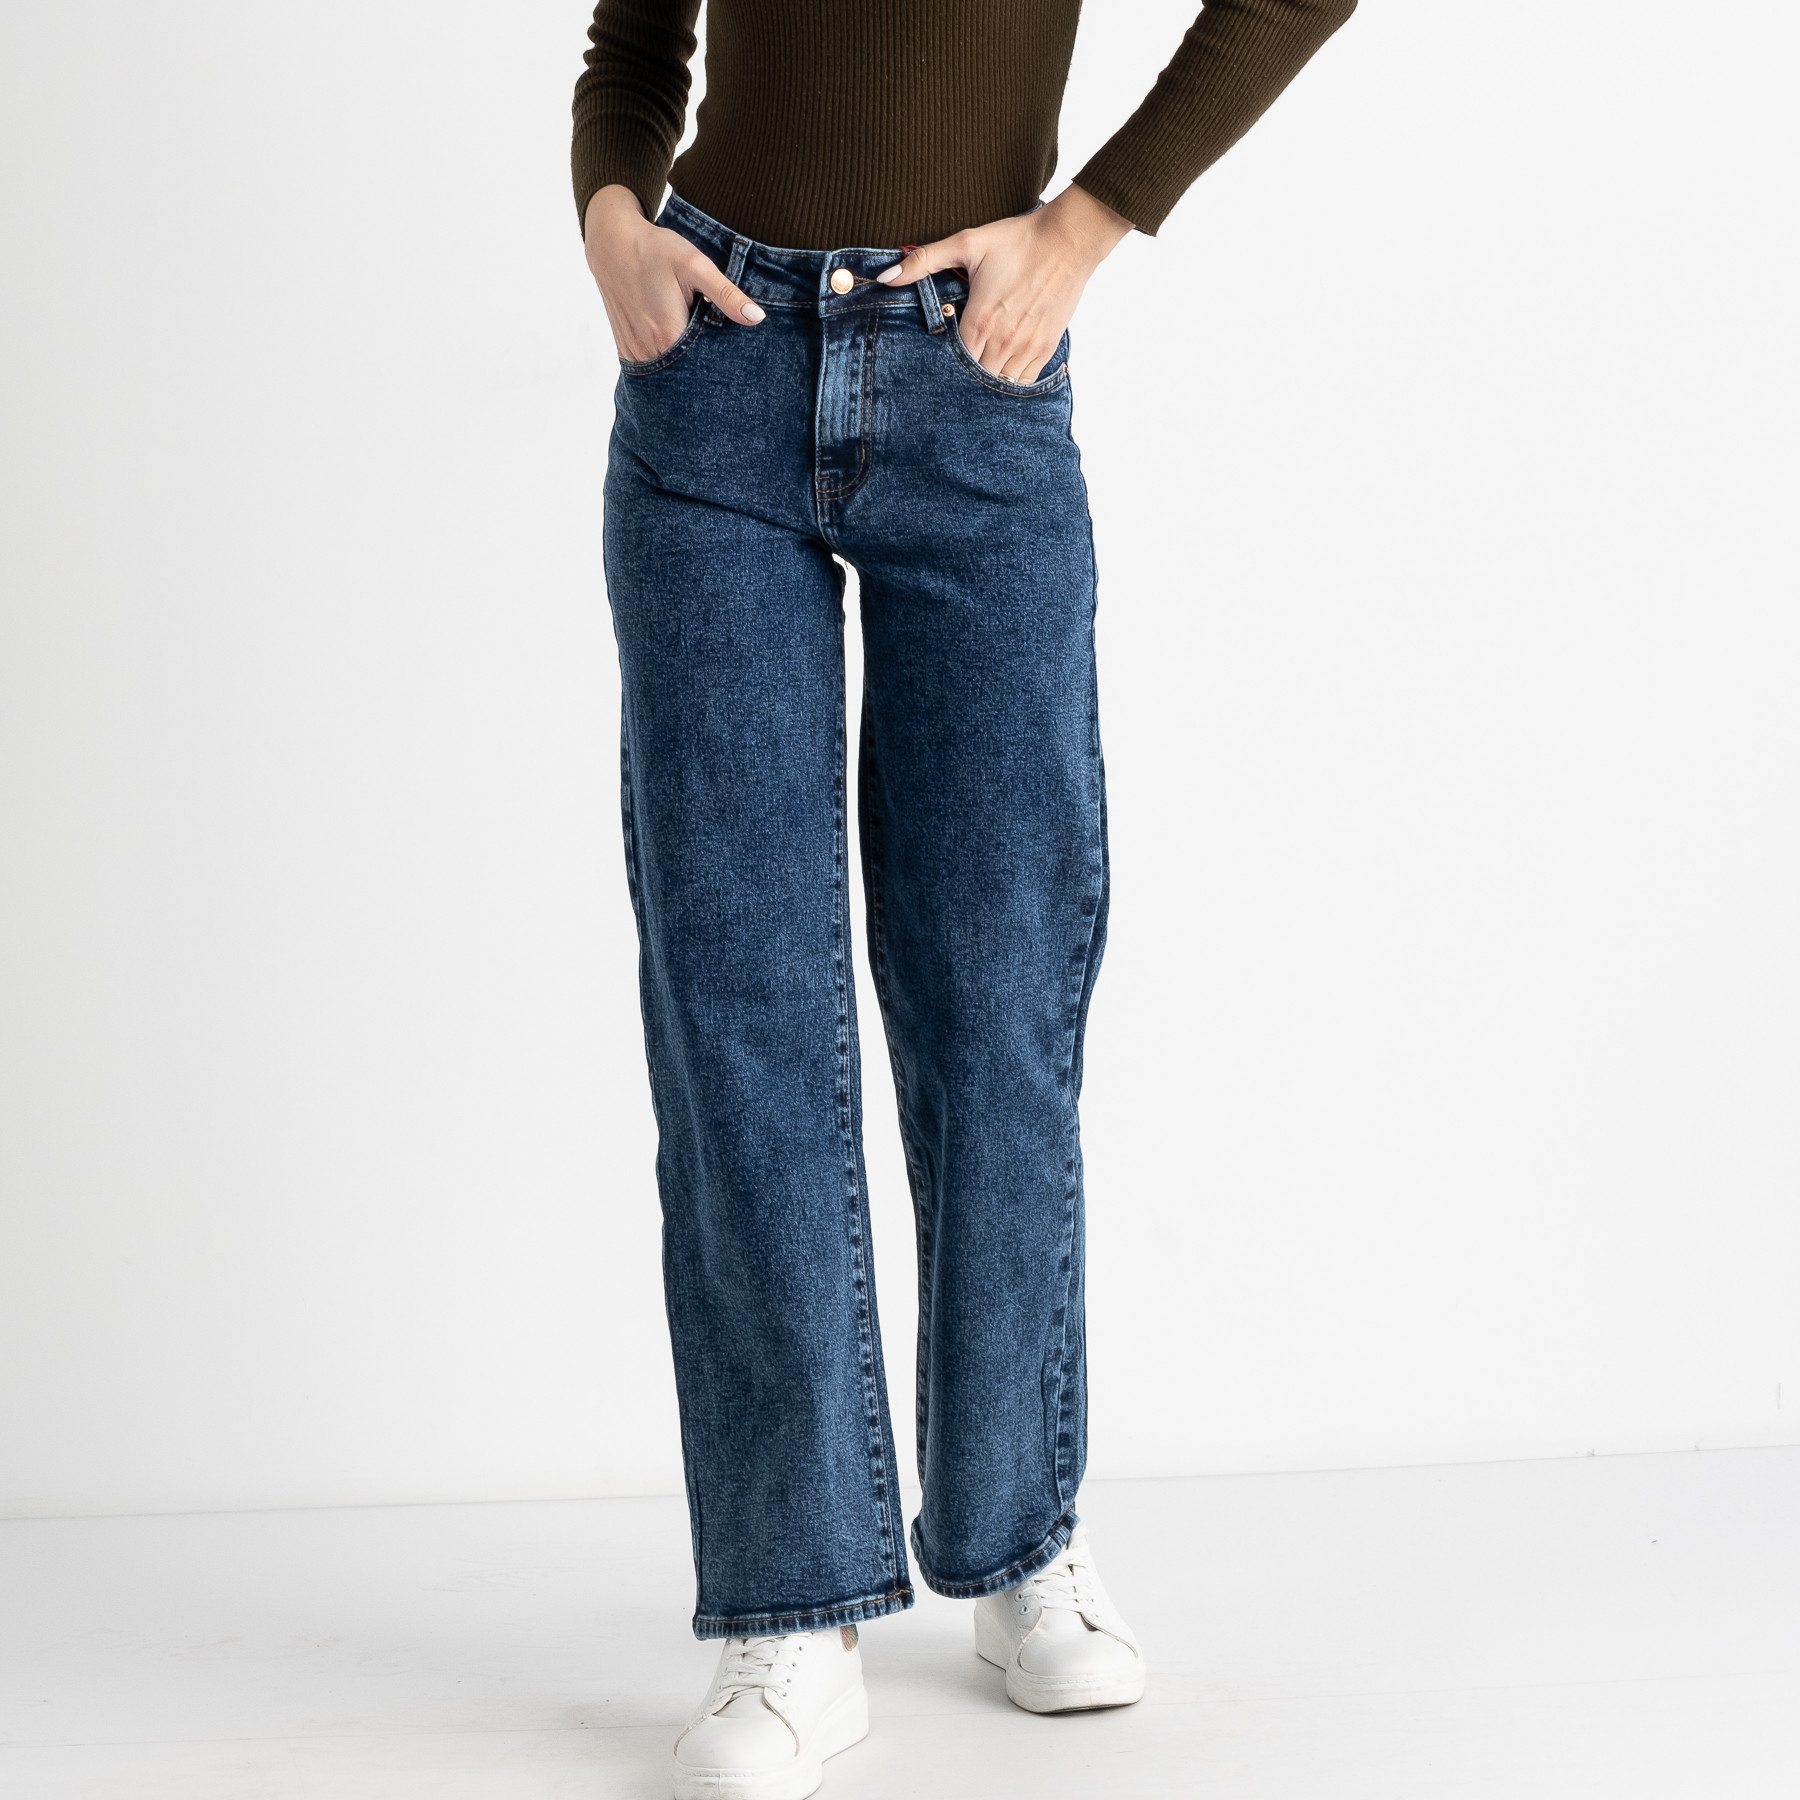 0676-8 HV Relucky  джинсы-кюлоты женские синие стрейчевые ( 6 ед. размеры : 25.26.27.28.29.30)